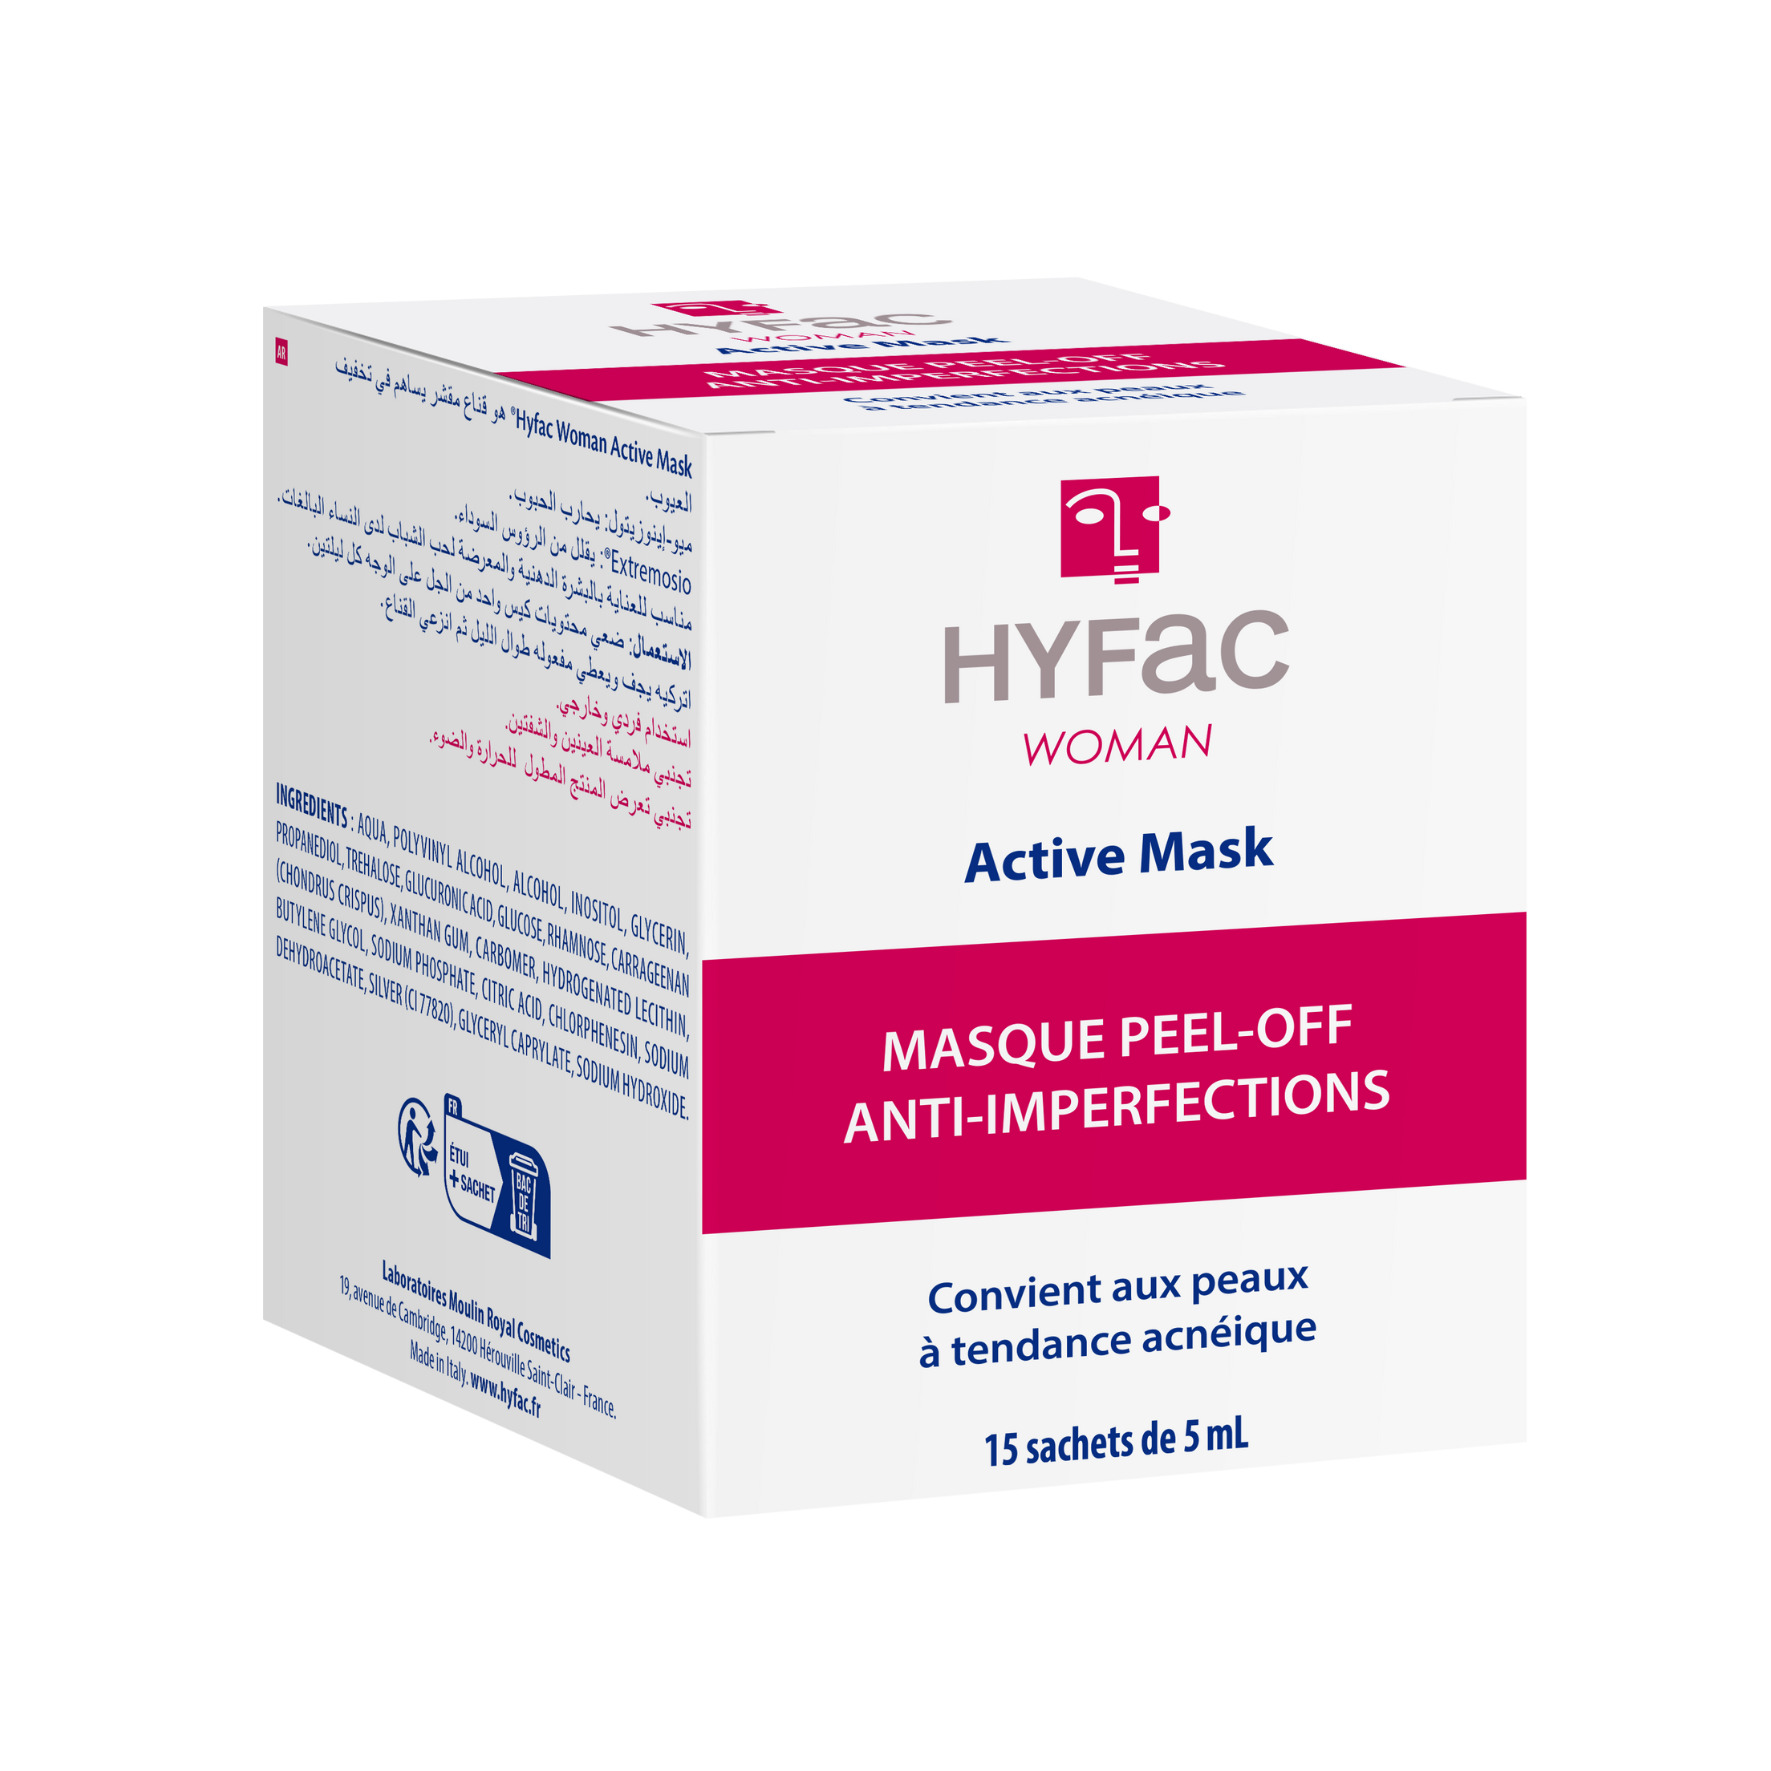 HYFAC WOMAN Aktivní maska na akné pro ženy